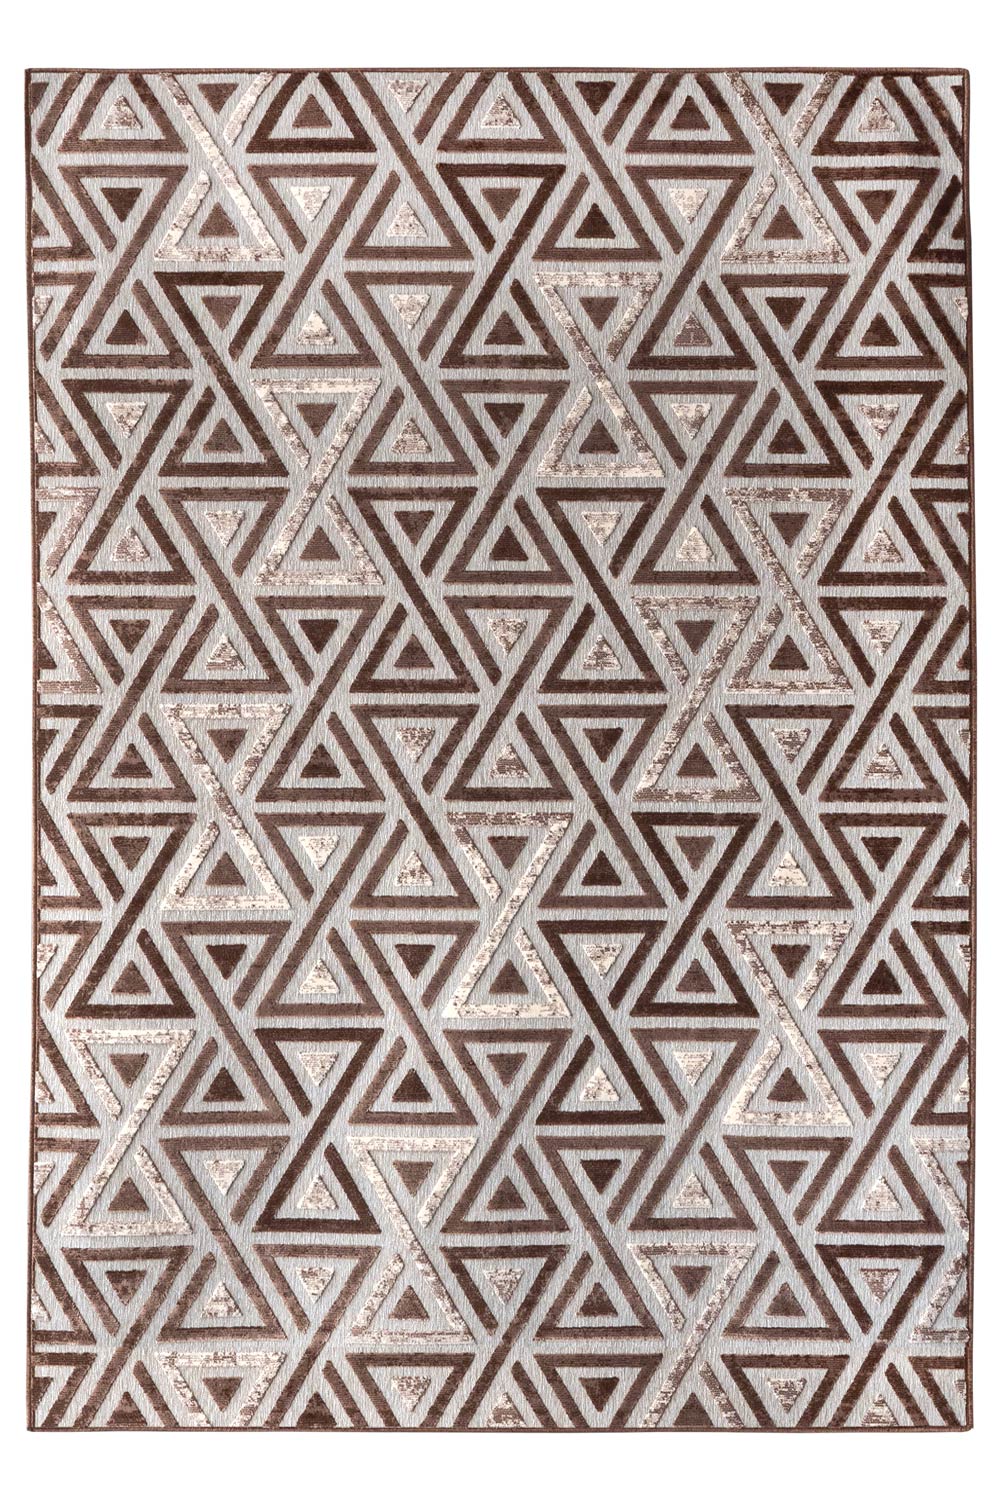 Kusový koberec RAGUSA 2503/85 Taupe/Champagne 200x300 cm